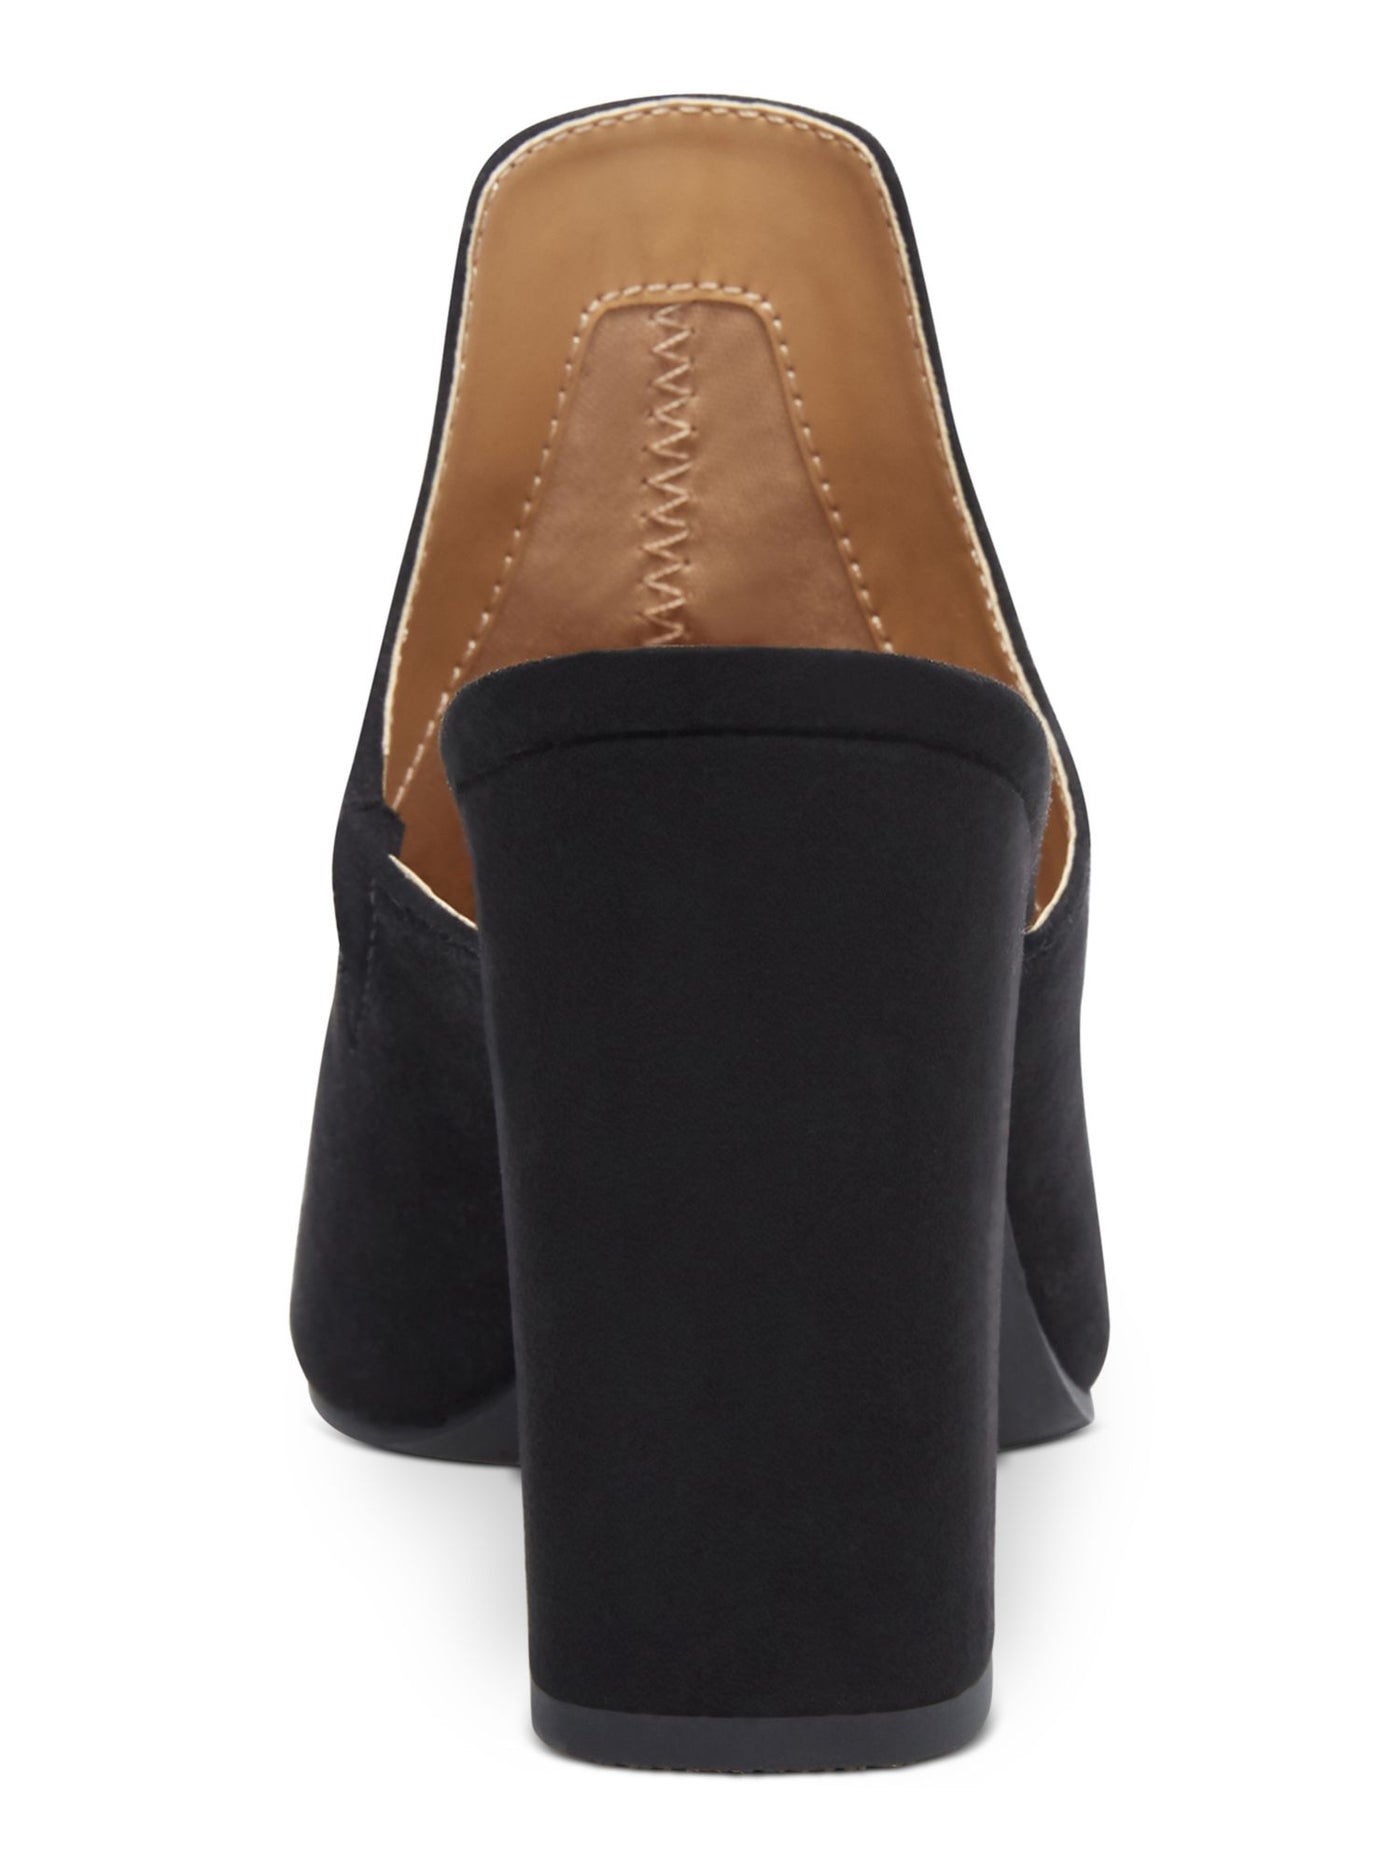 WILD PAIR Womens Black Extended Vamp Carlita Pointed Toe Block Heel Slip On Heeled Mules Shoes 5 M